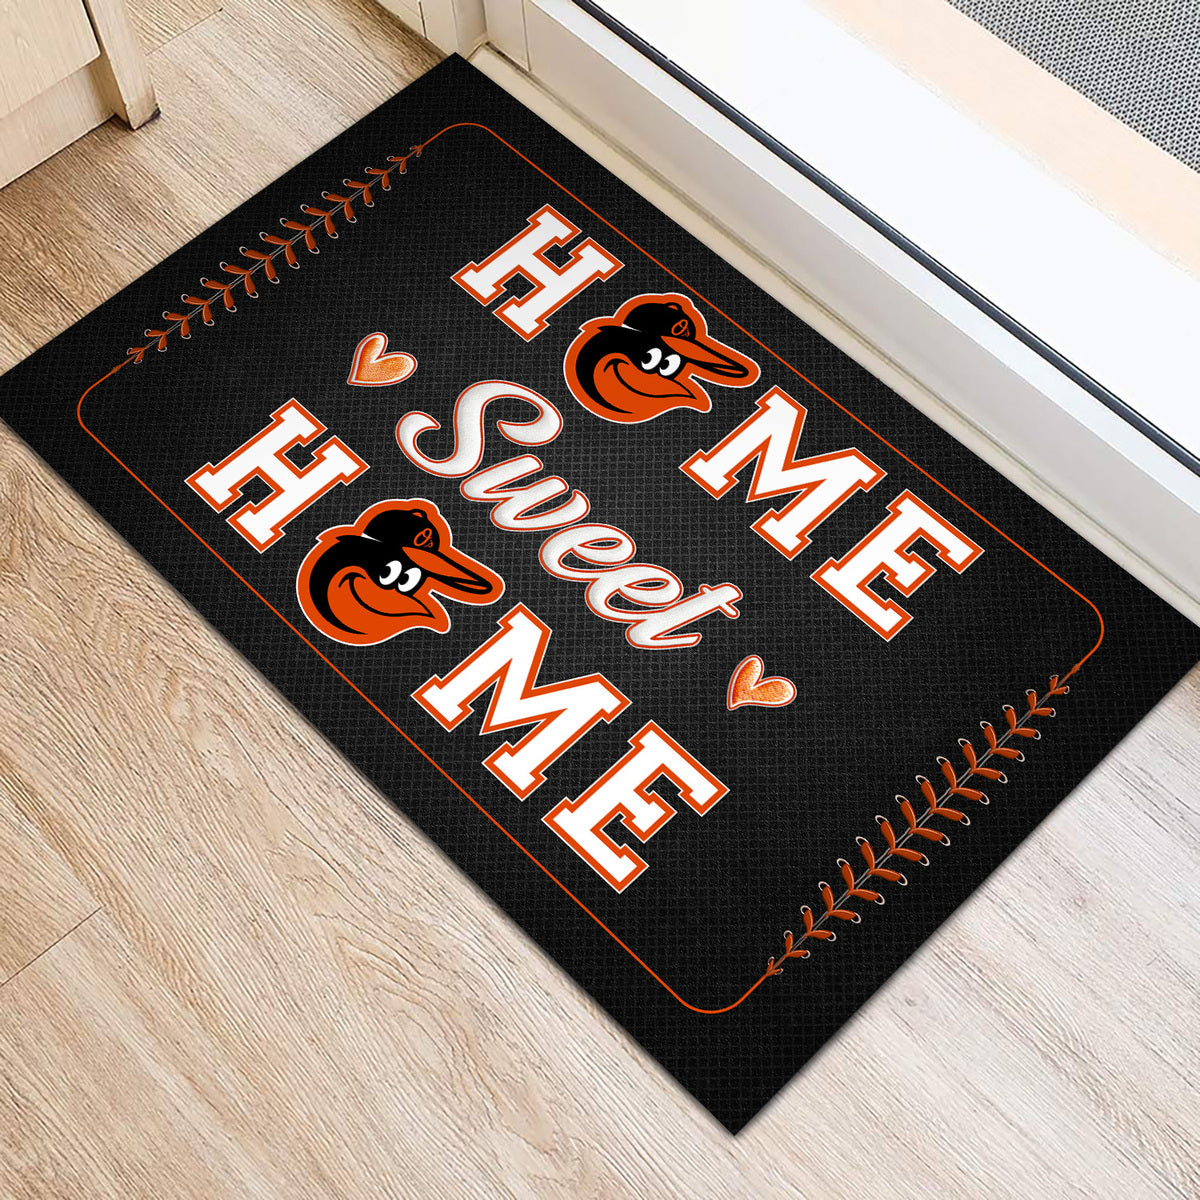 (New) Home Sweet Home - Baltimore ORO - Anti Slip Indoor Doormat